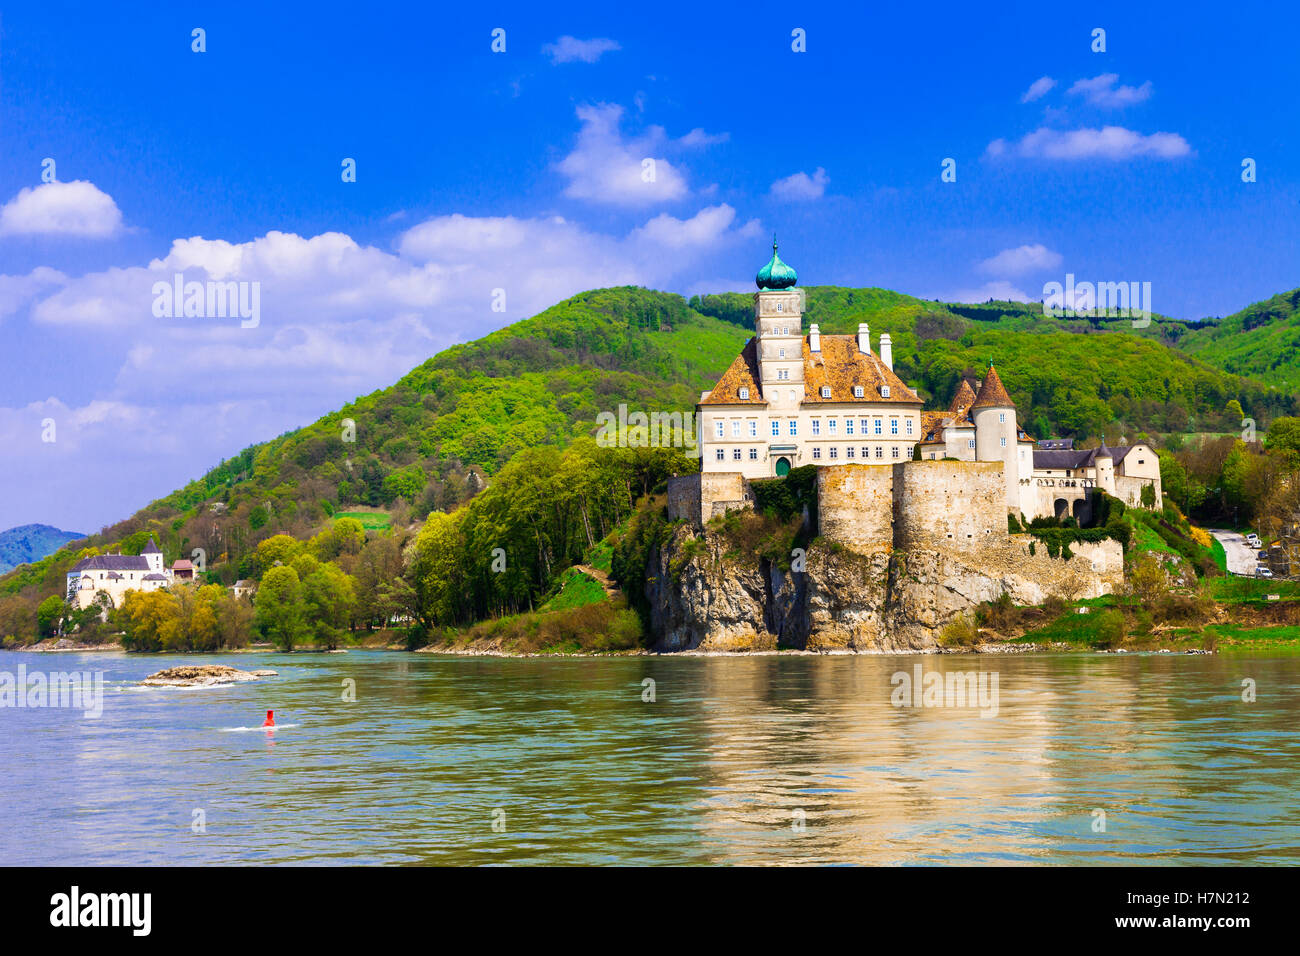 Schonbuhel château, Danube, Autriche Banque D'Images